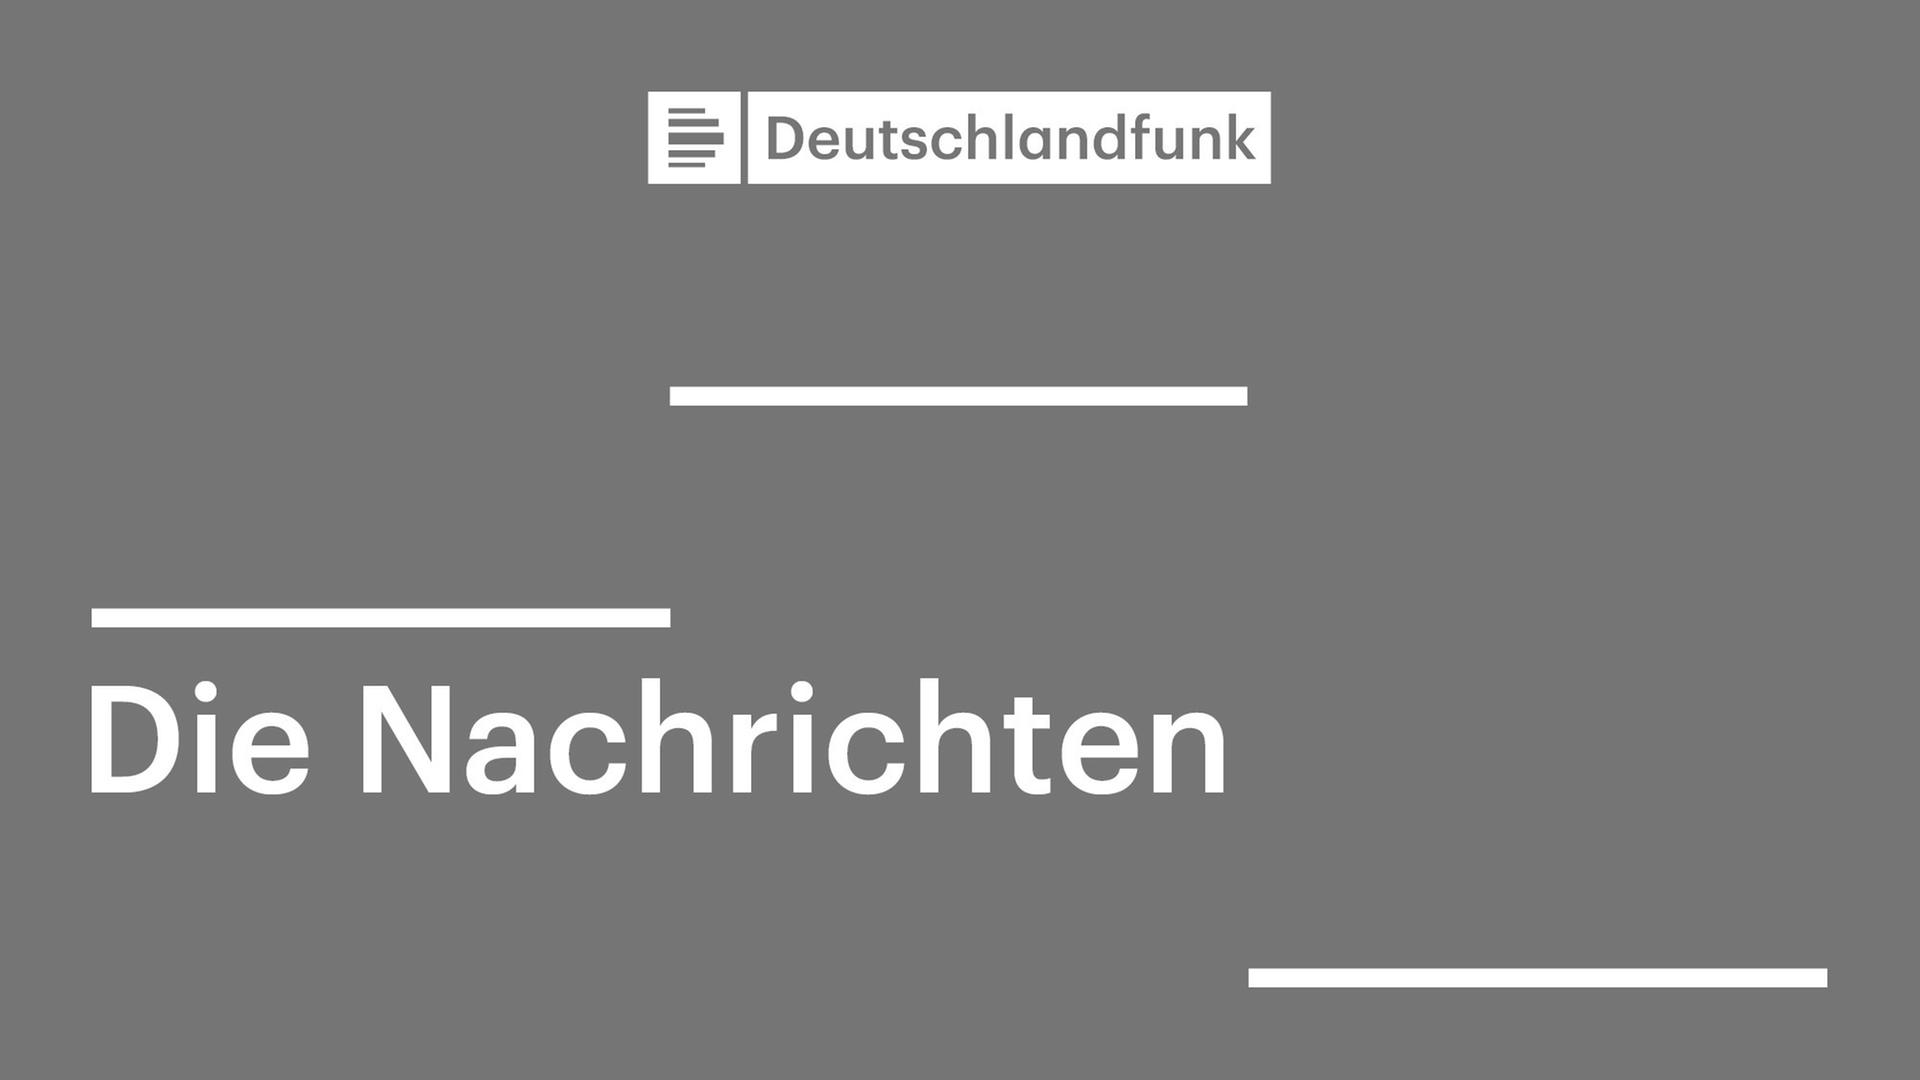 Schwarz-weißes Symbolbild mit dem Logo des Deutschlandfunks und dem Zusatz "Die Nachrichten"